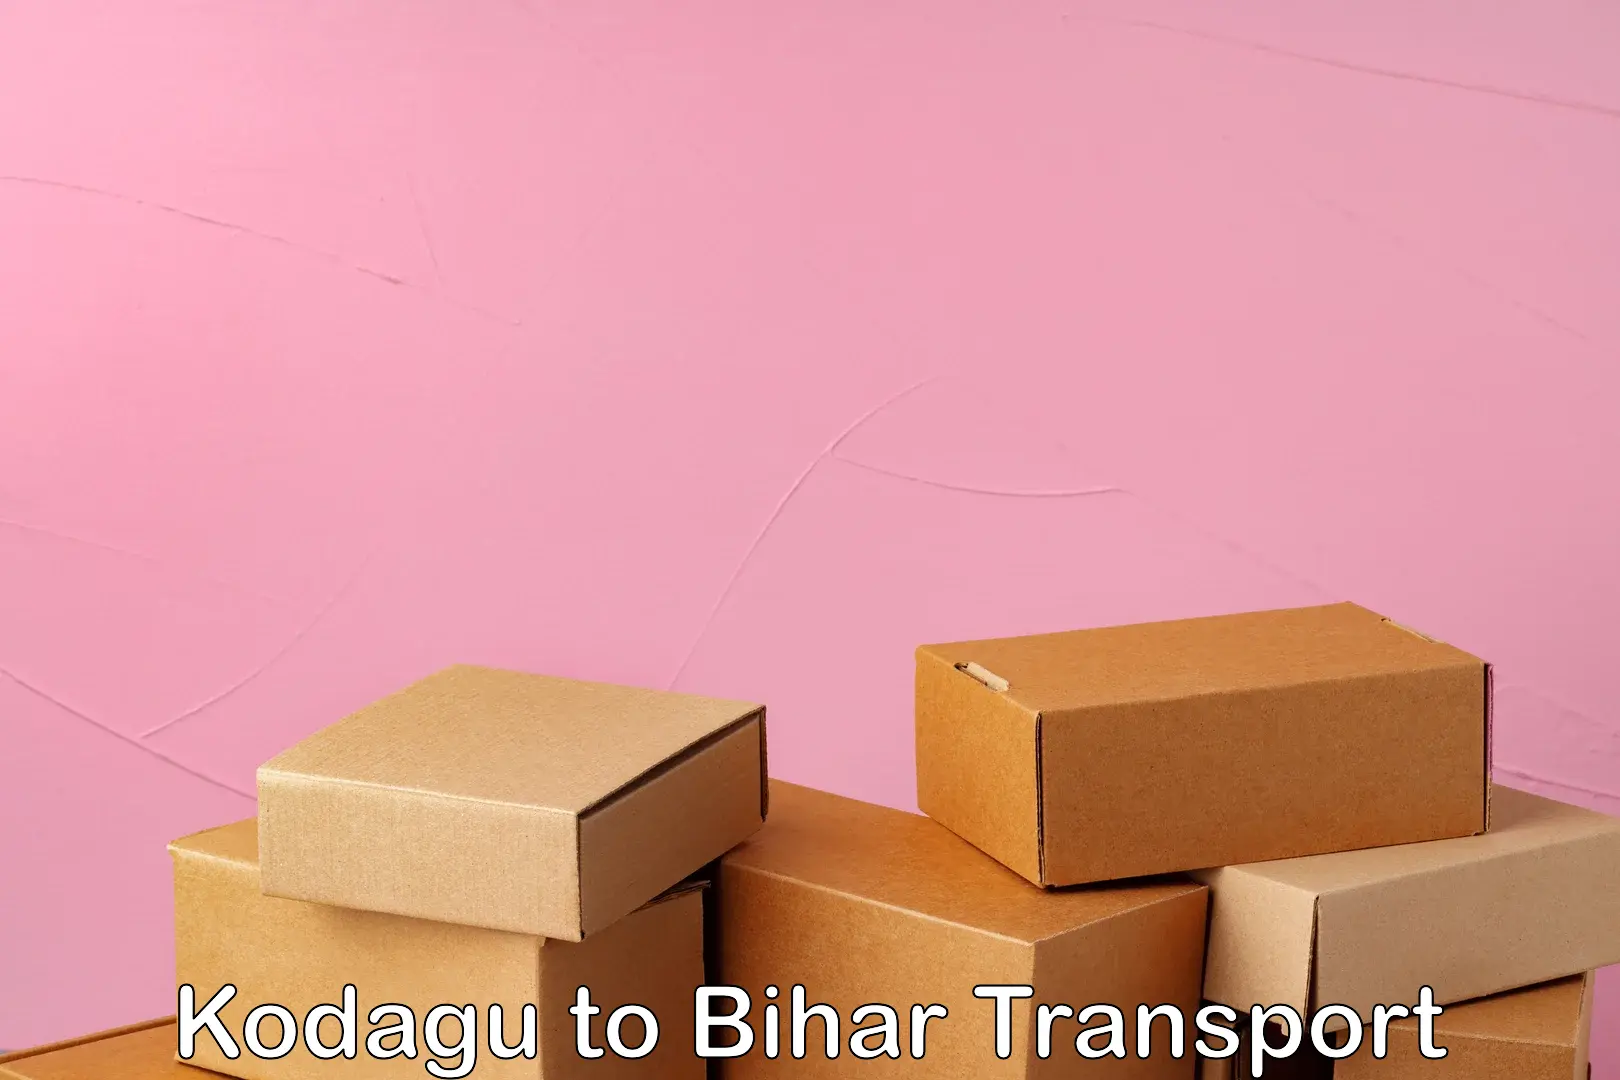 Cargo train transport services Kodagu to Bihar